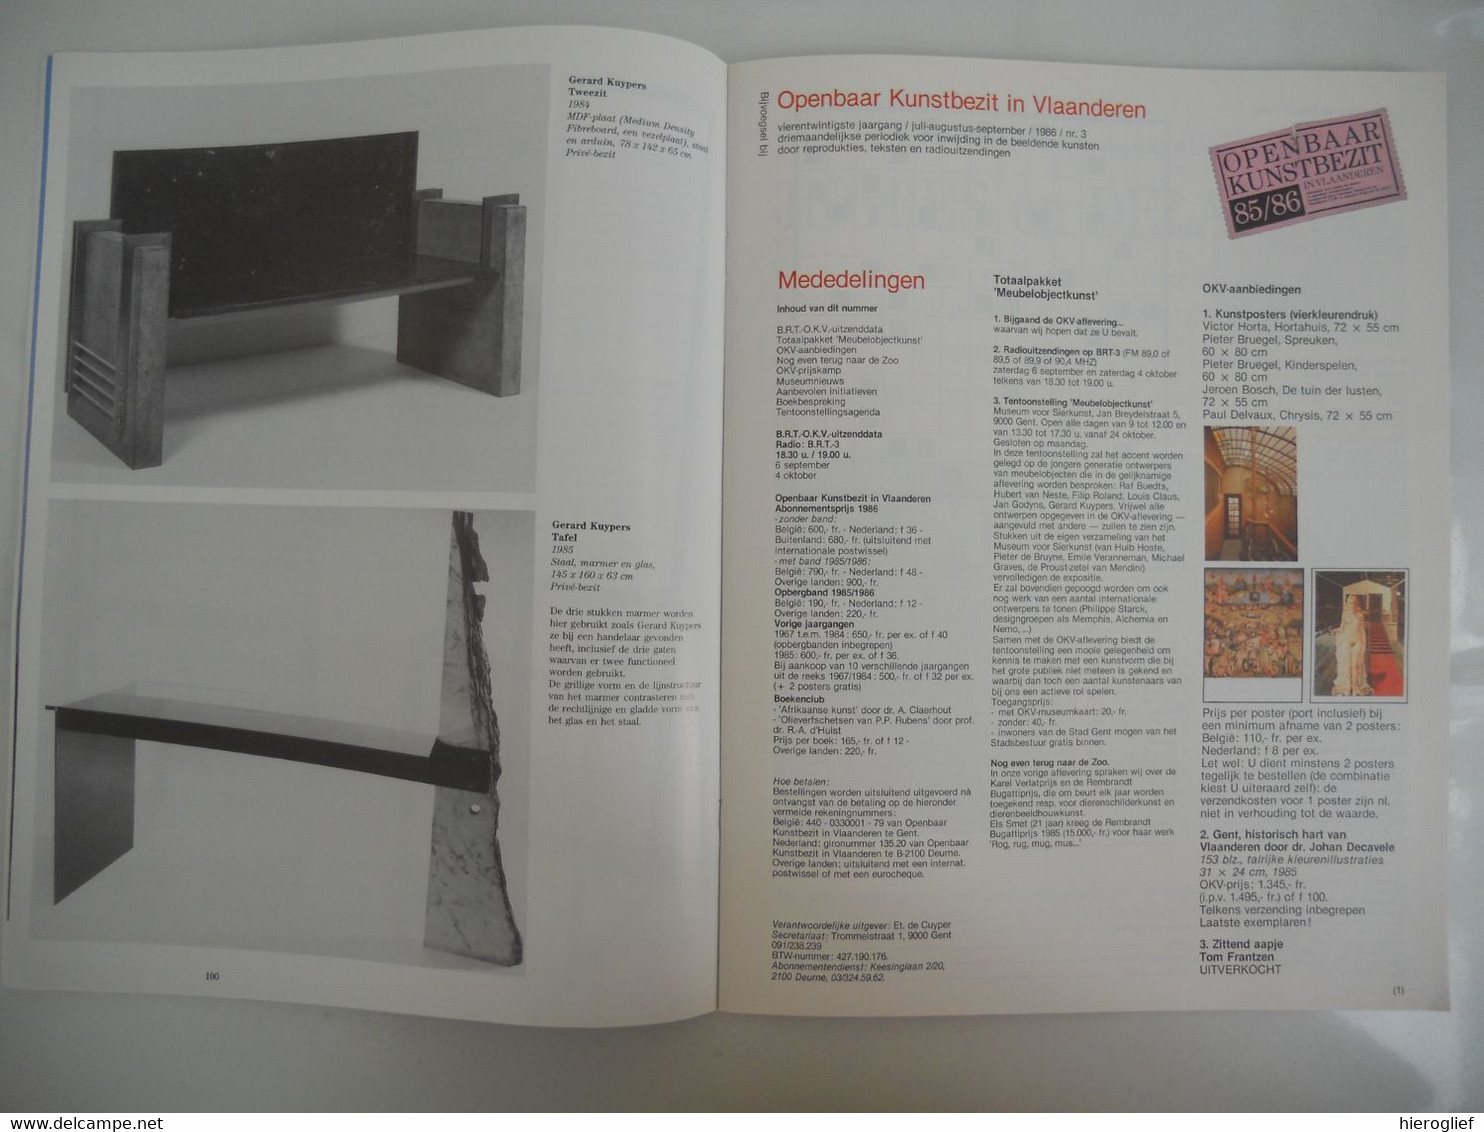 MEUBELOBJECTKUNST / EEN MEUBEL APART Openbaar Kunstbezit In Vlaanderen 1986 - 3 OKV - Histoire